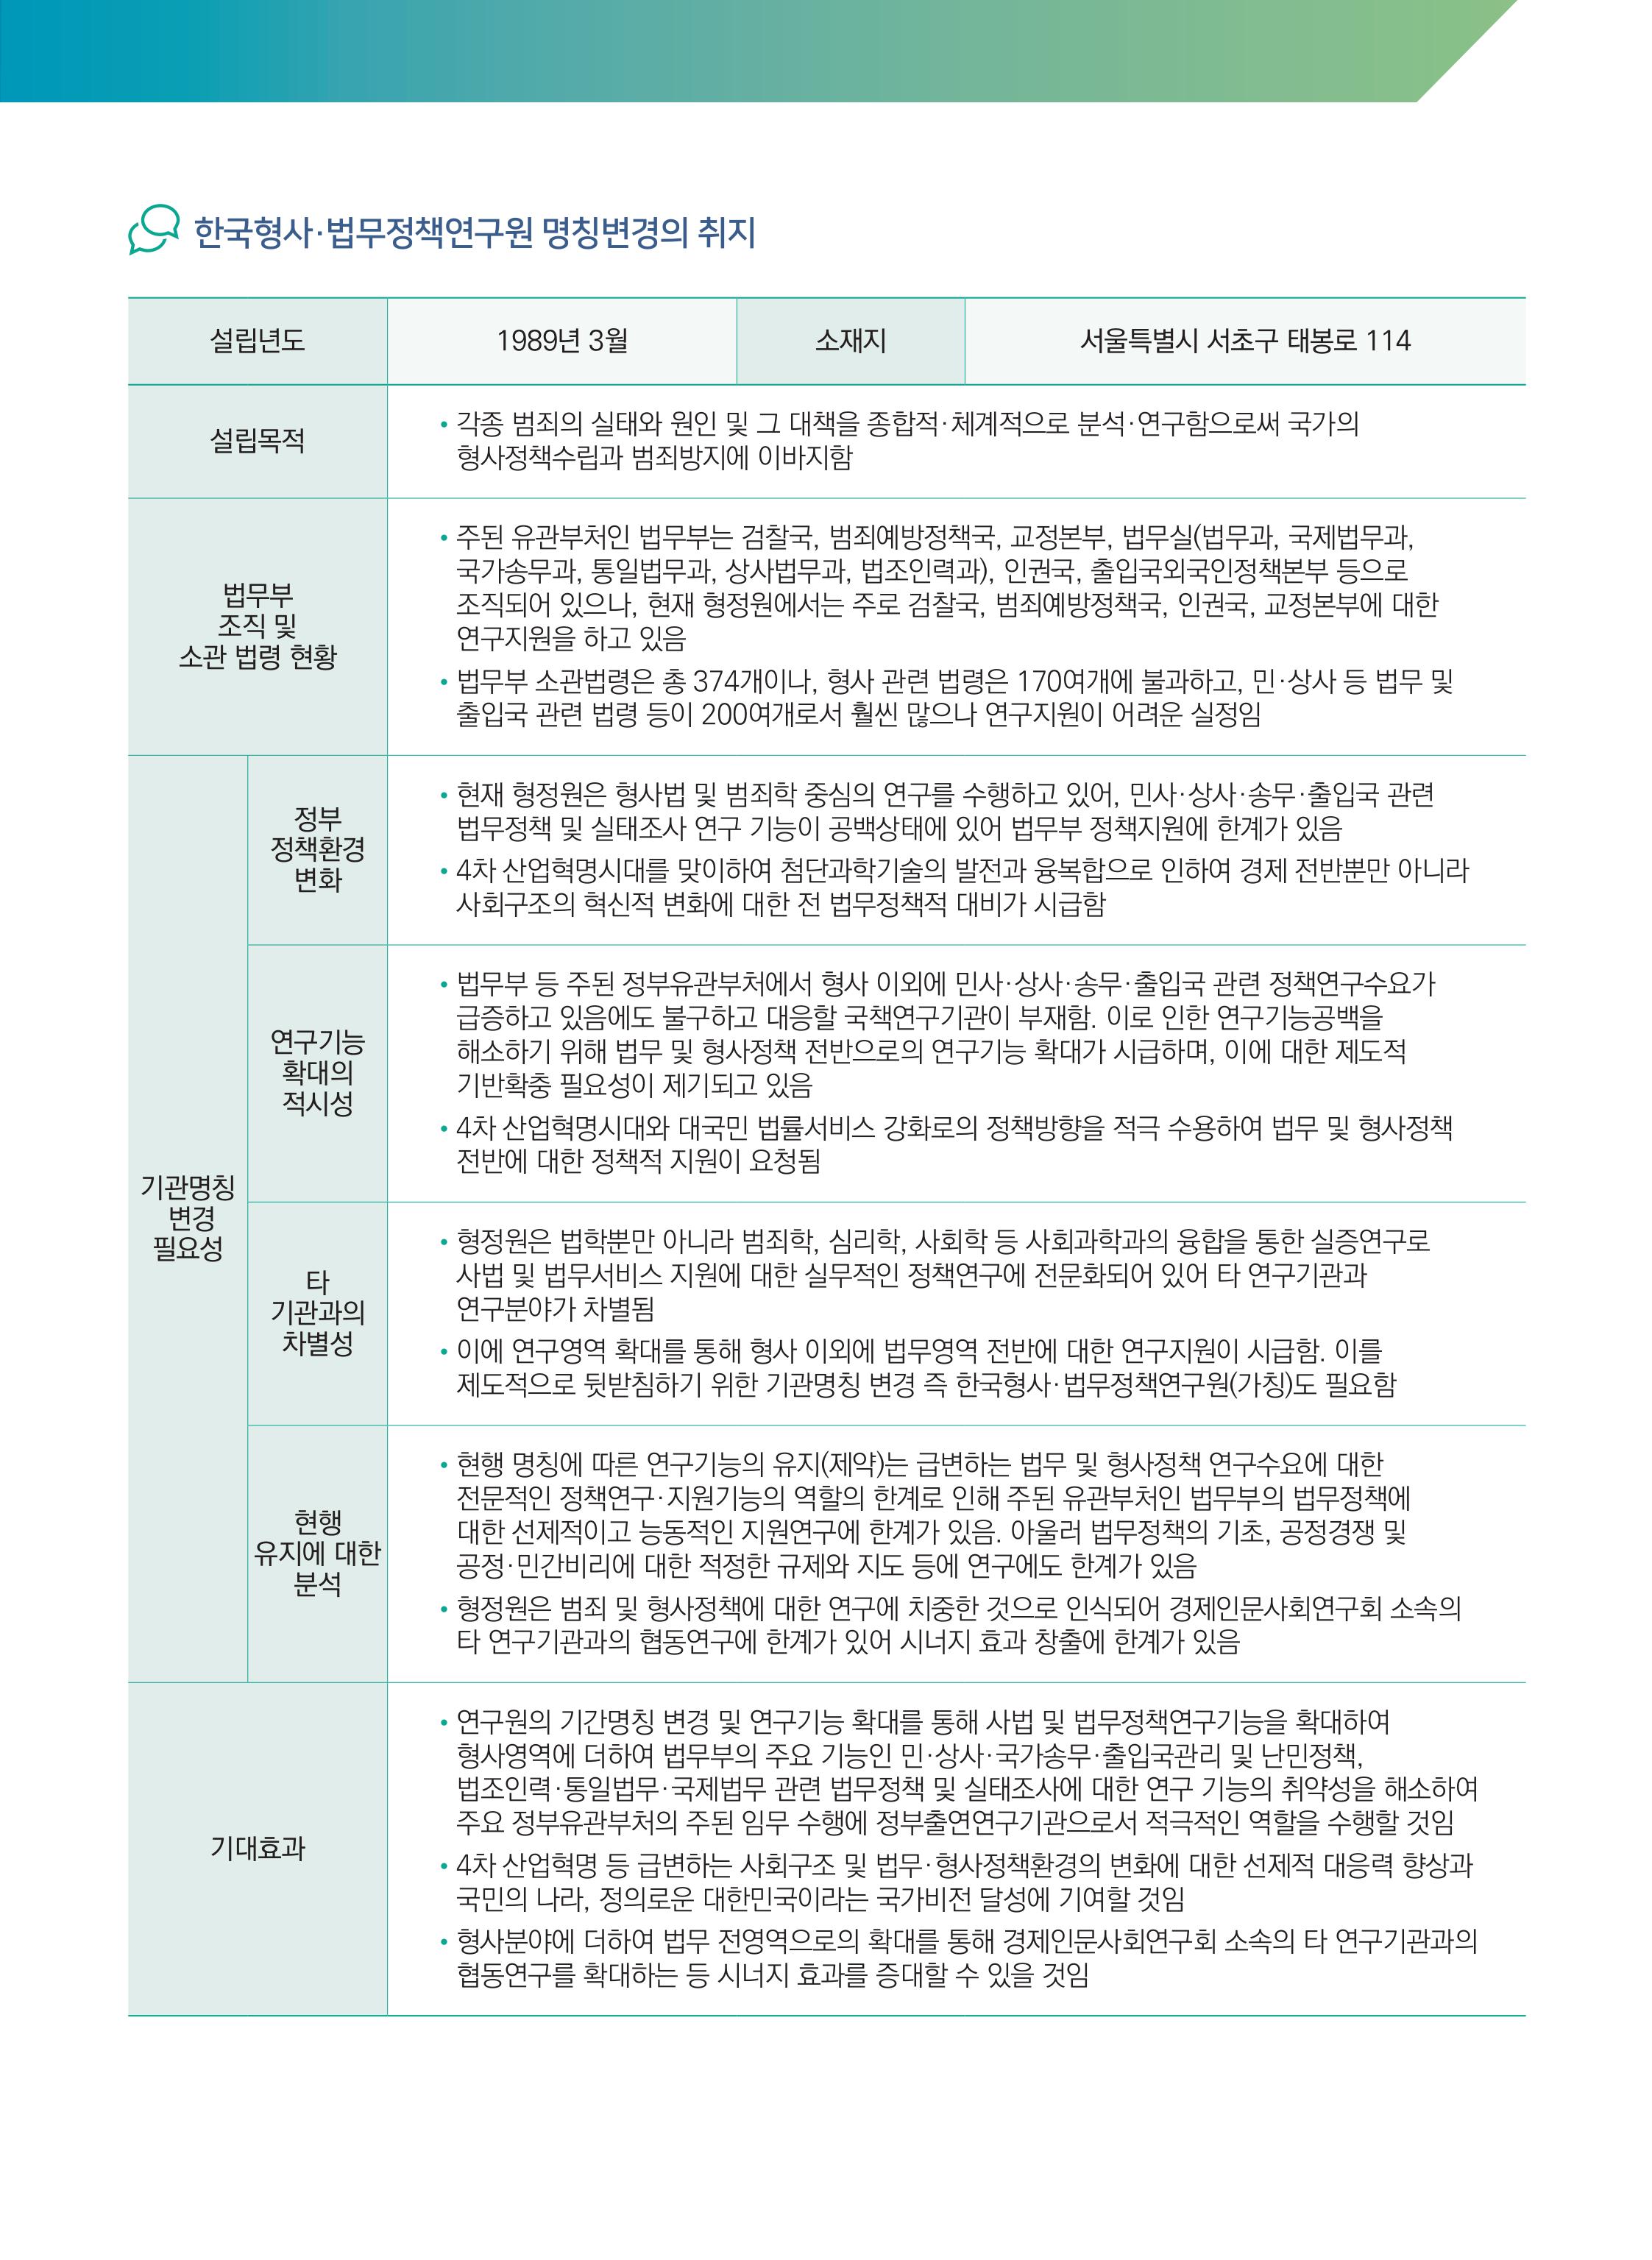 한국형사·법무정책연구원 명칭변경의 취지 - 자세한 내용은 하단 참조